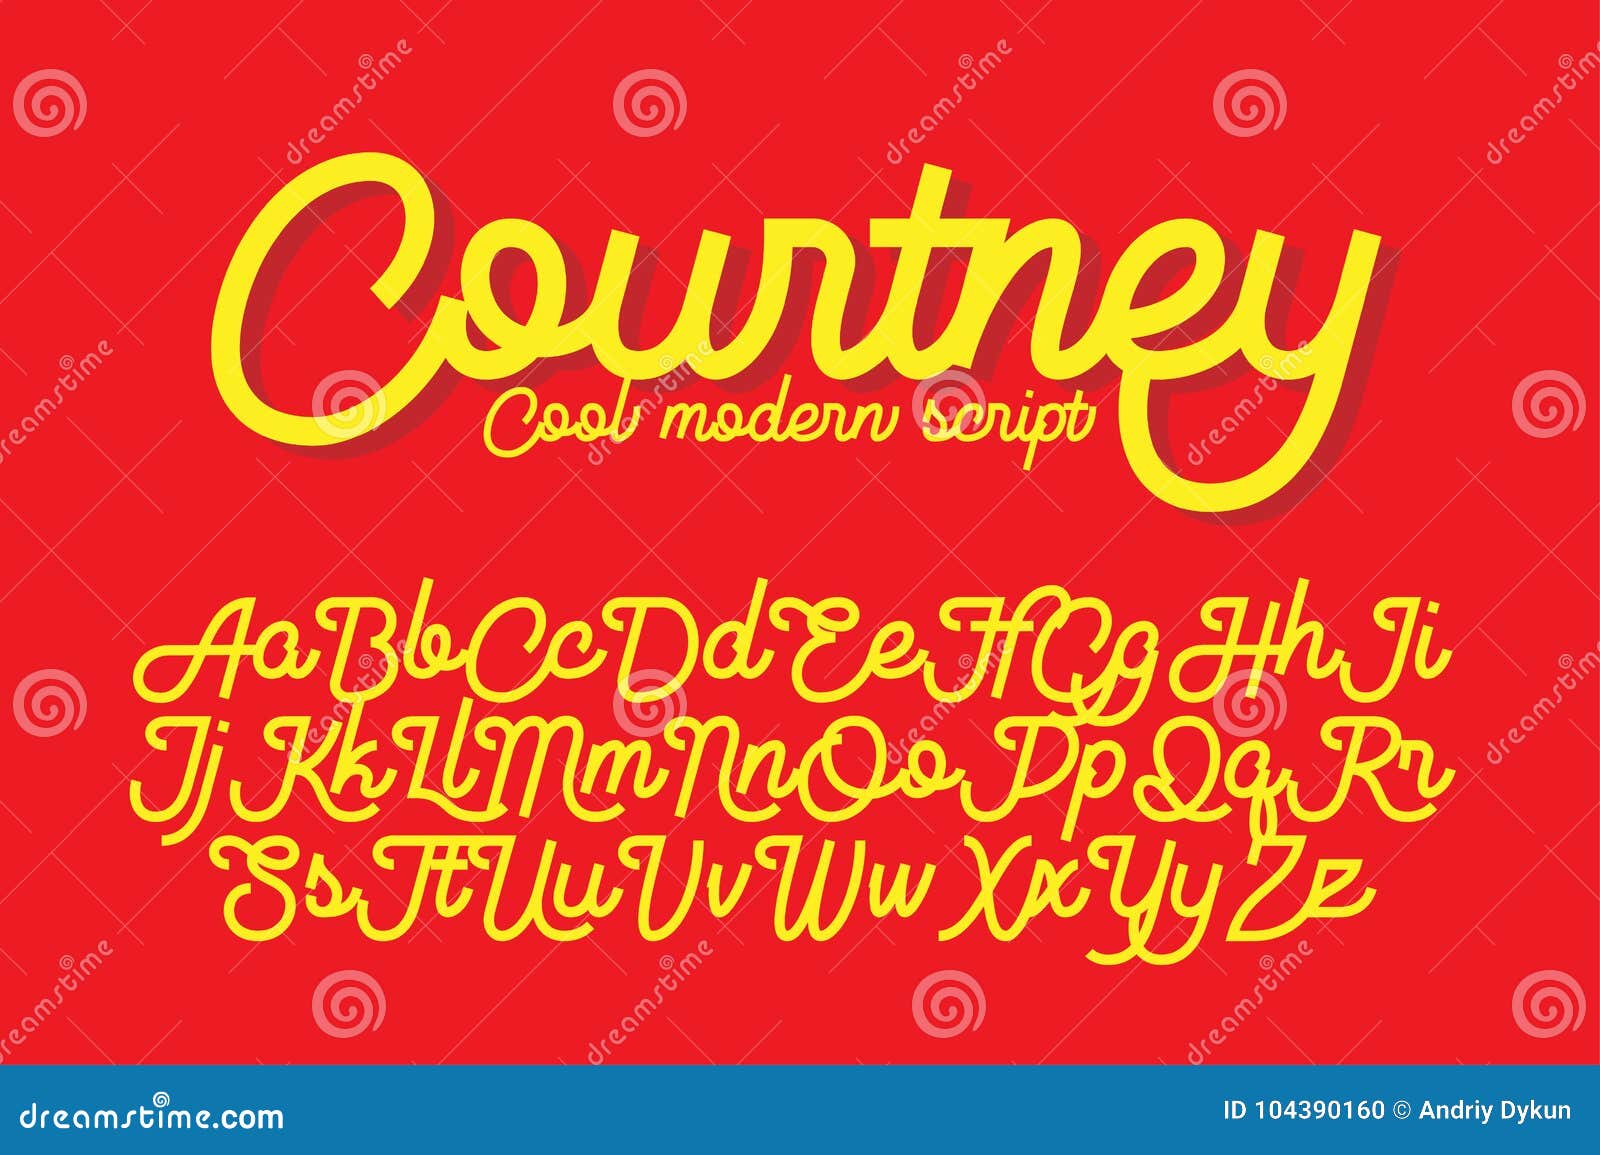 courtney cool modern script font